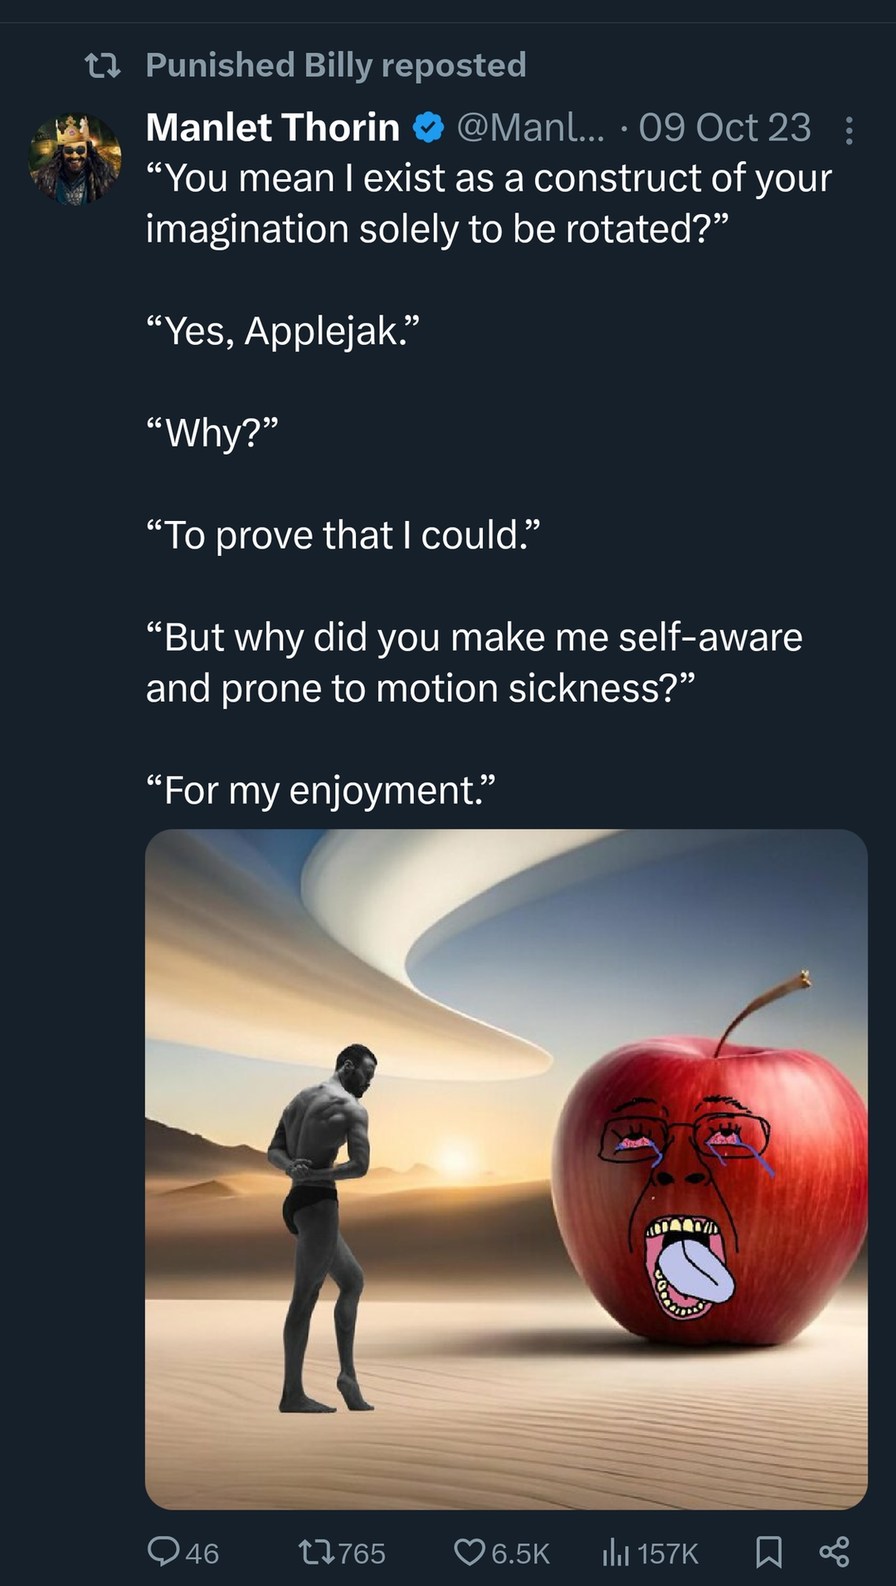 dongs in an apple - meme